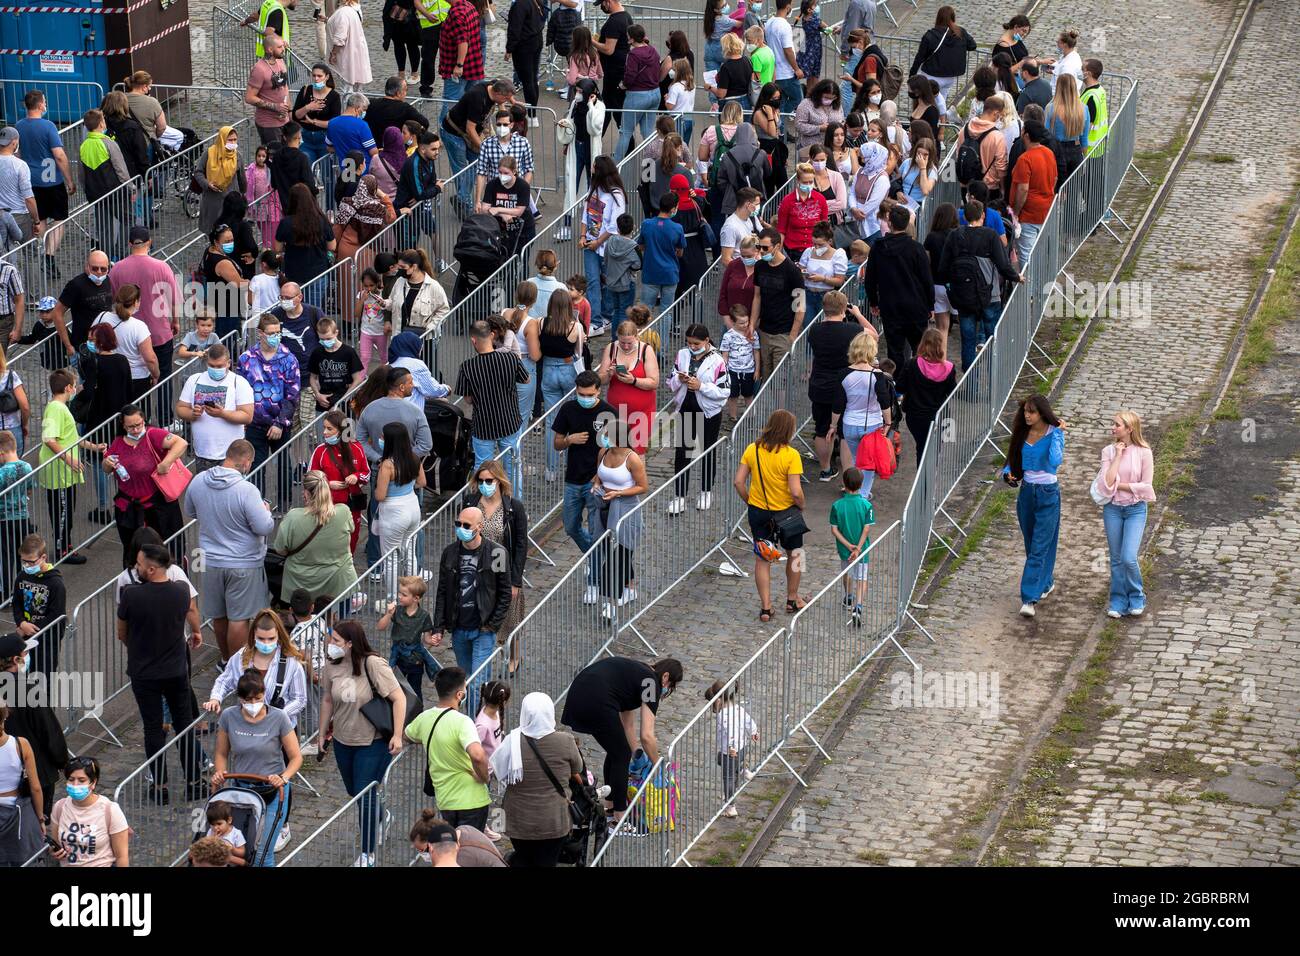 Leute, die in der Schlange stehen, Corona-konform, um den Jahrmarkt, den temporären Vergnügungspark Happy Colonia, am Ufer des Rheins in Deutz, C, zu betreten Stockfoto